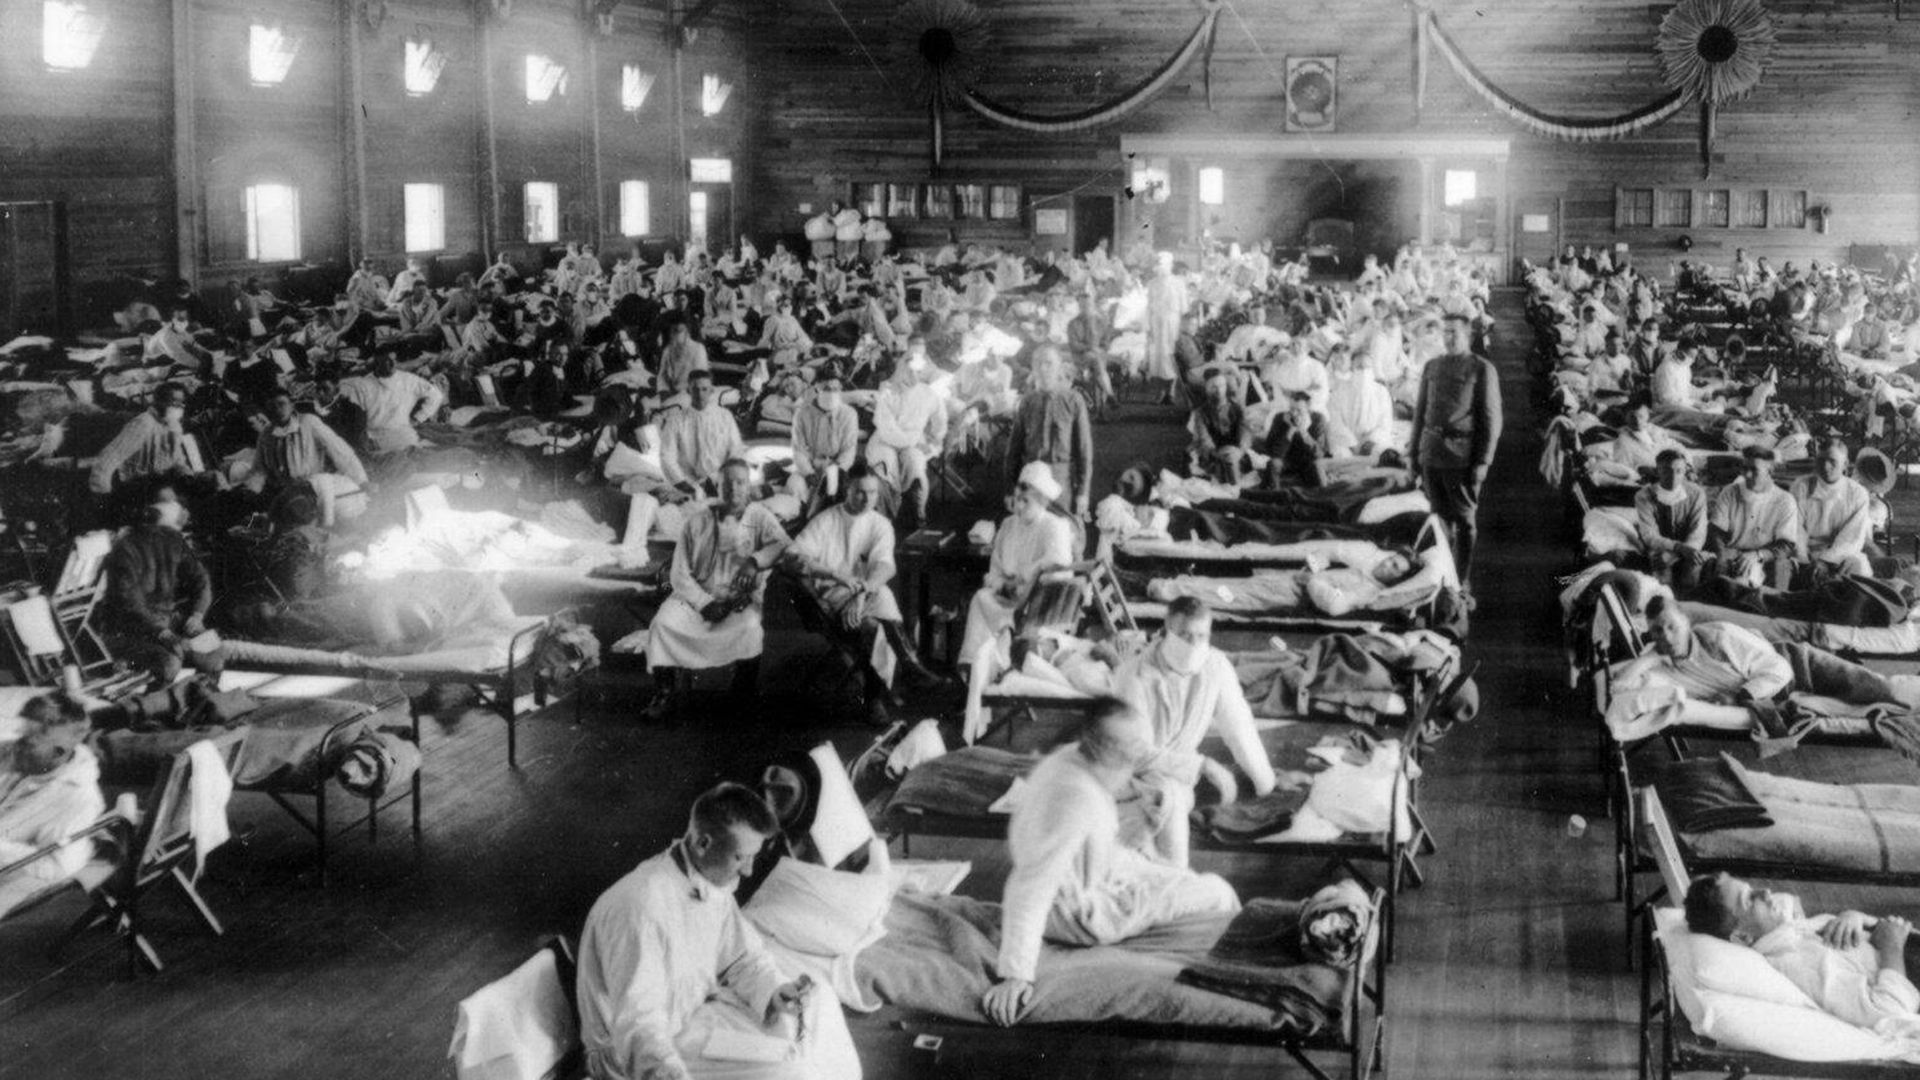 Spanische Grippe 1918: Lazarett Camp Funston in Kansas | imago images 98215673